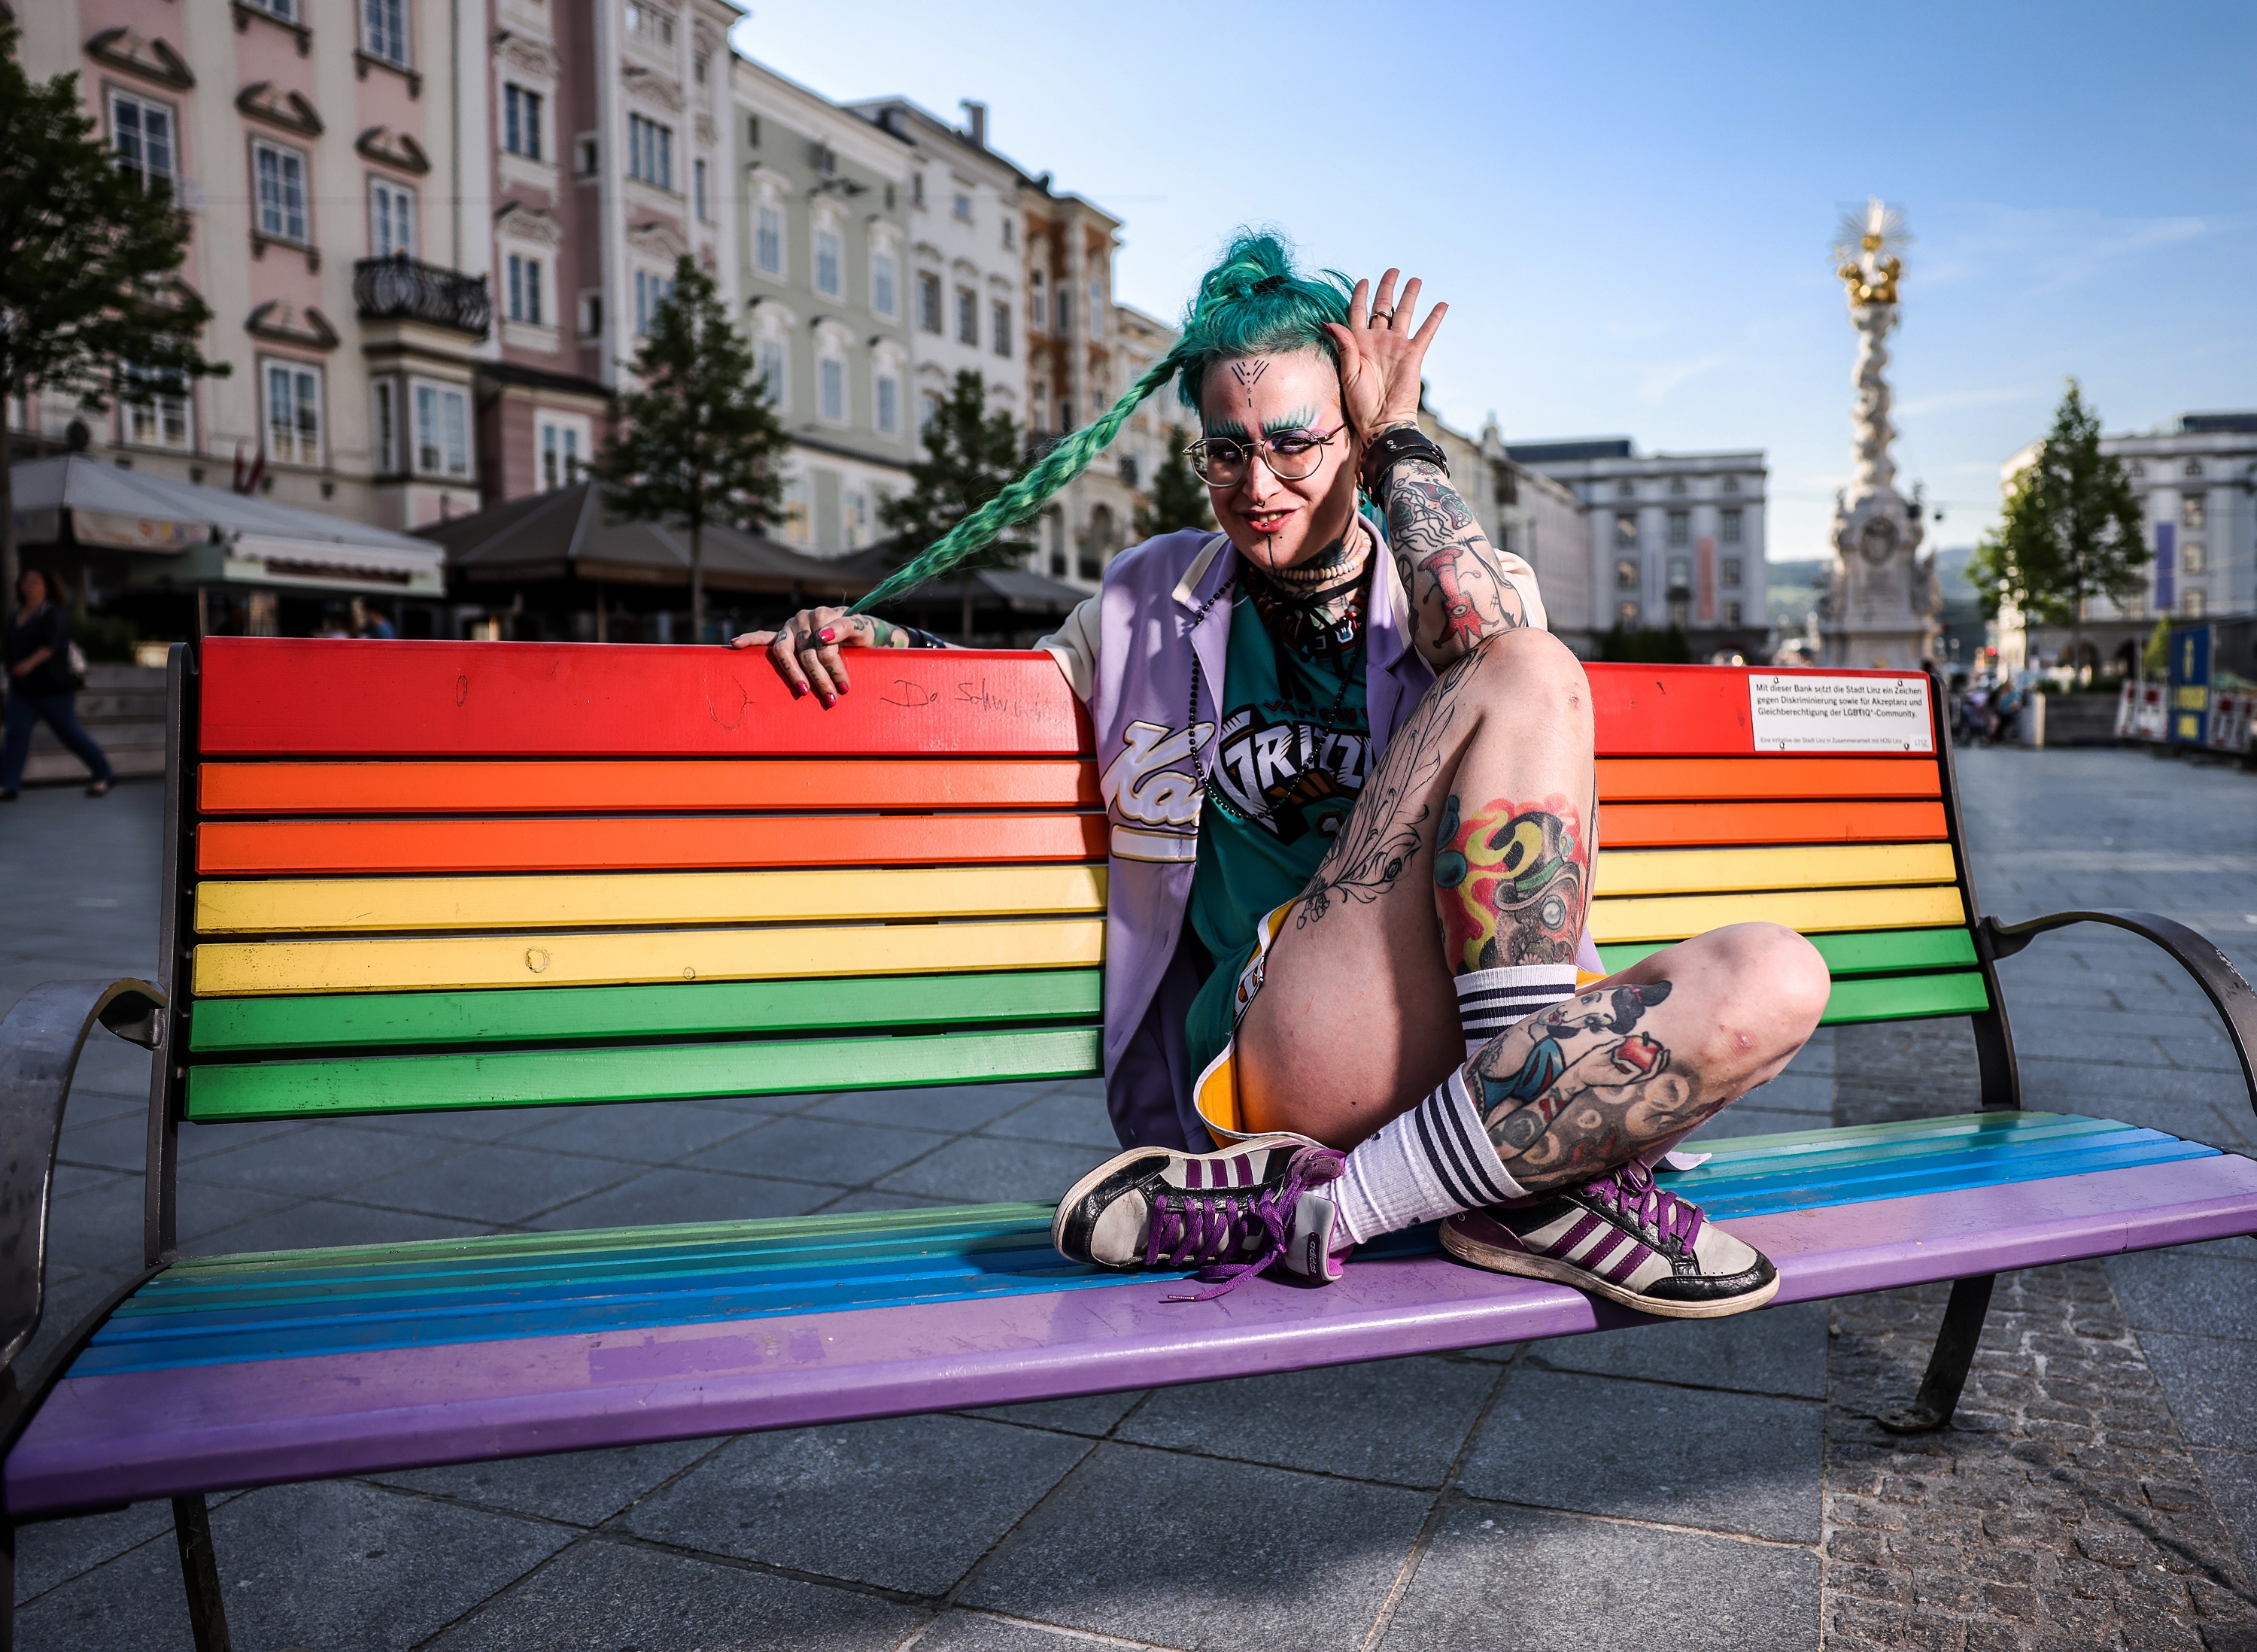 In den Farben des Regenbogens gestrichene Bänke zieren verschiedene Plätze in Linz als Zeichen für Toleranz. Hier sitzt Queer Artist Alice Moe auf einer der Bänke am Linzer Hauptplatz.